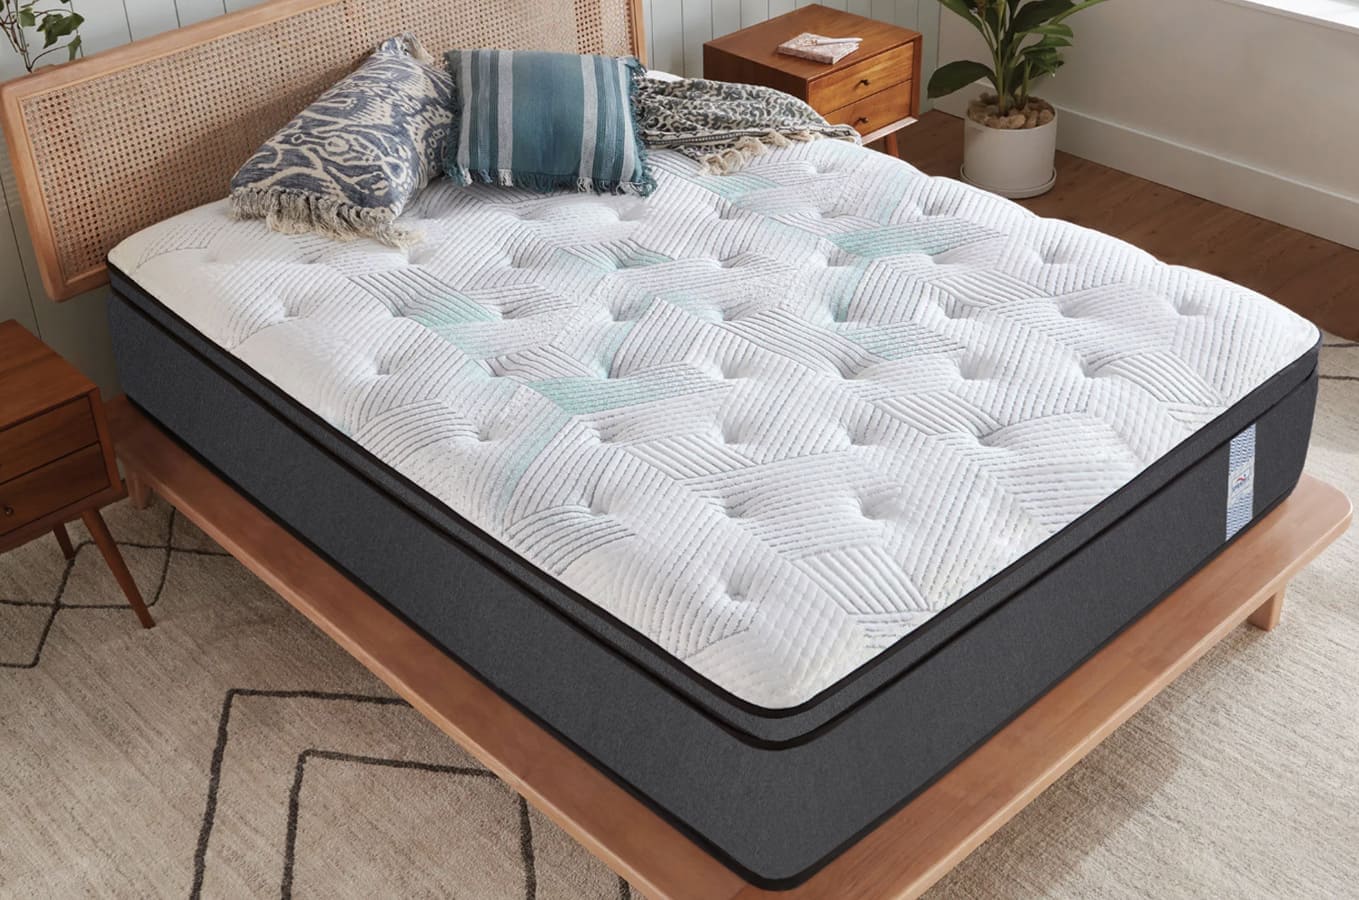 bed butler comfort pocket spring mattress